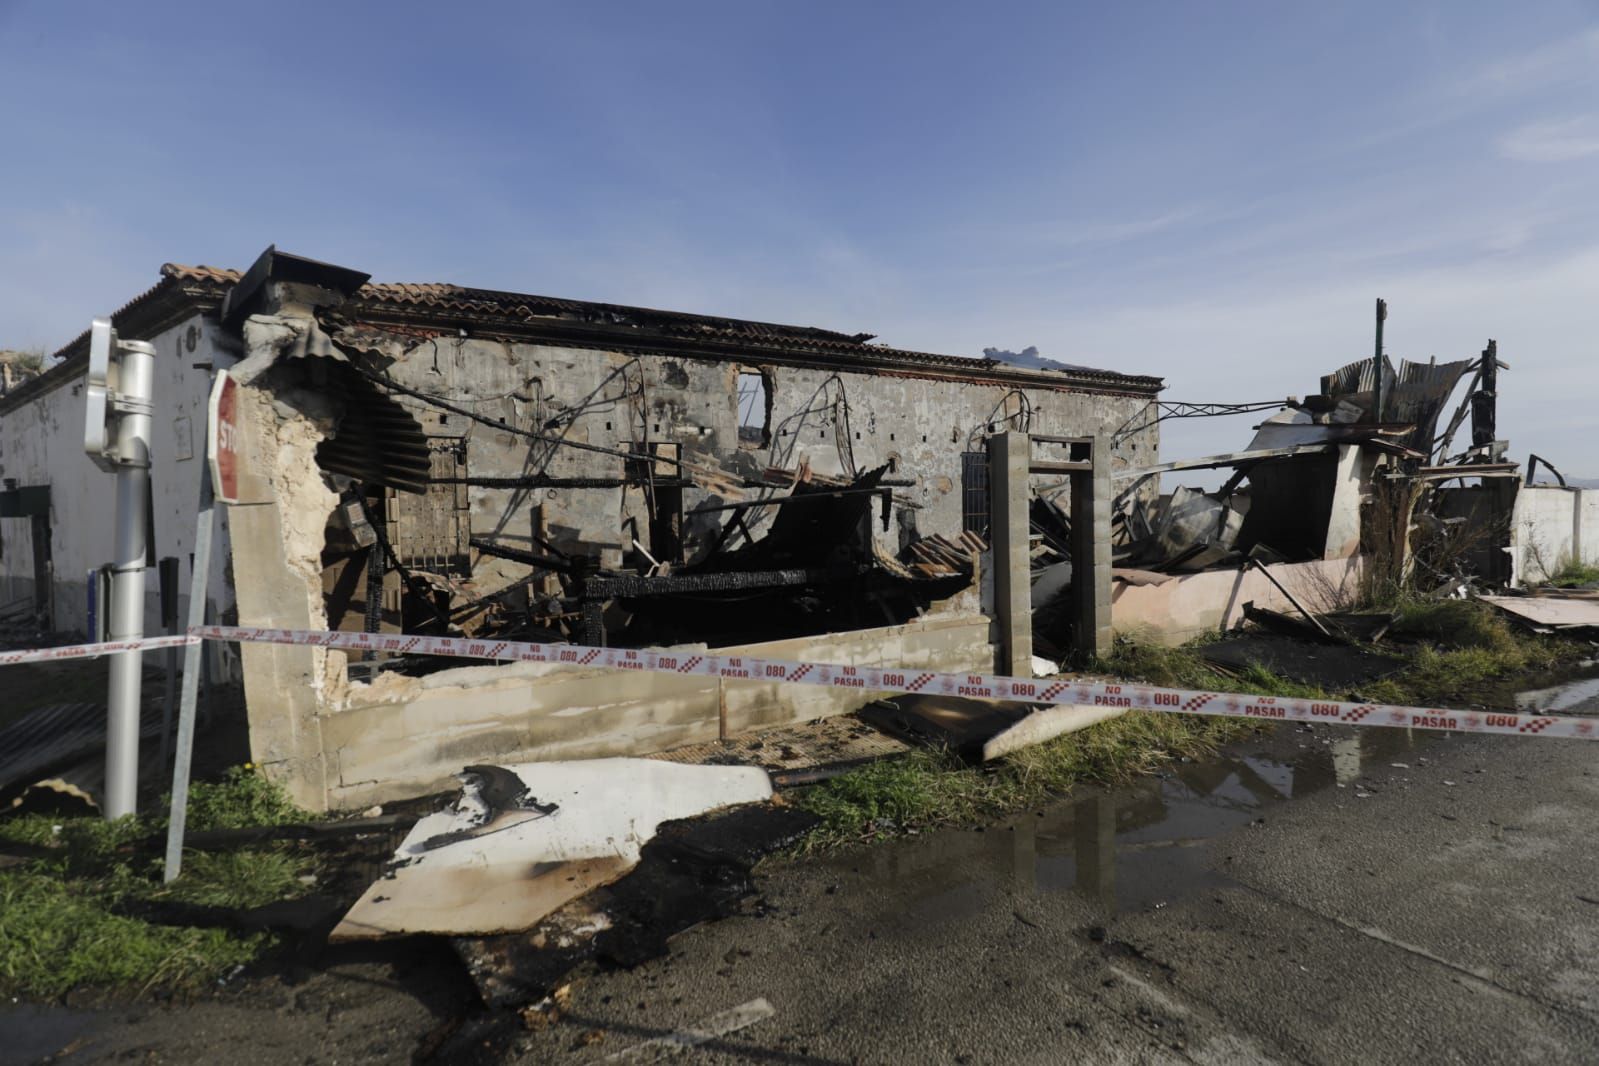 Un incendio de grandes dimensiones consume cuatro viviendas de madrugada junto a Son Banya